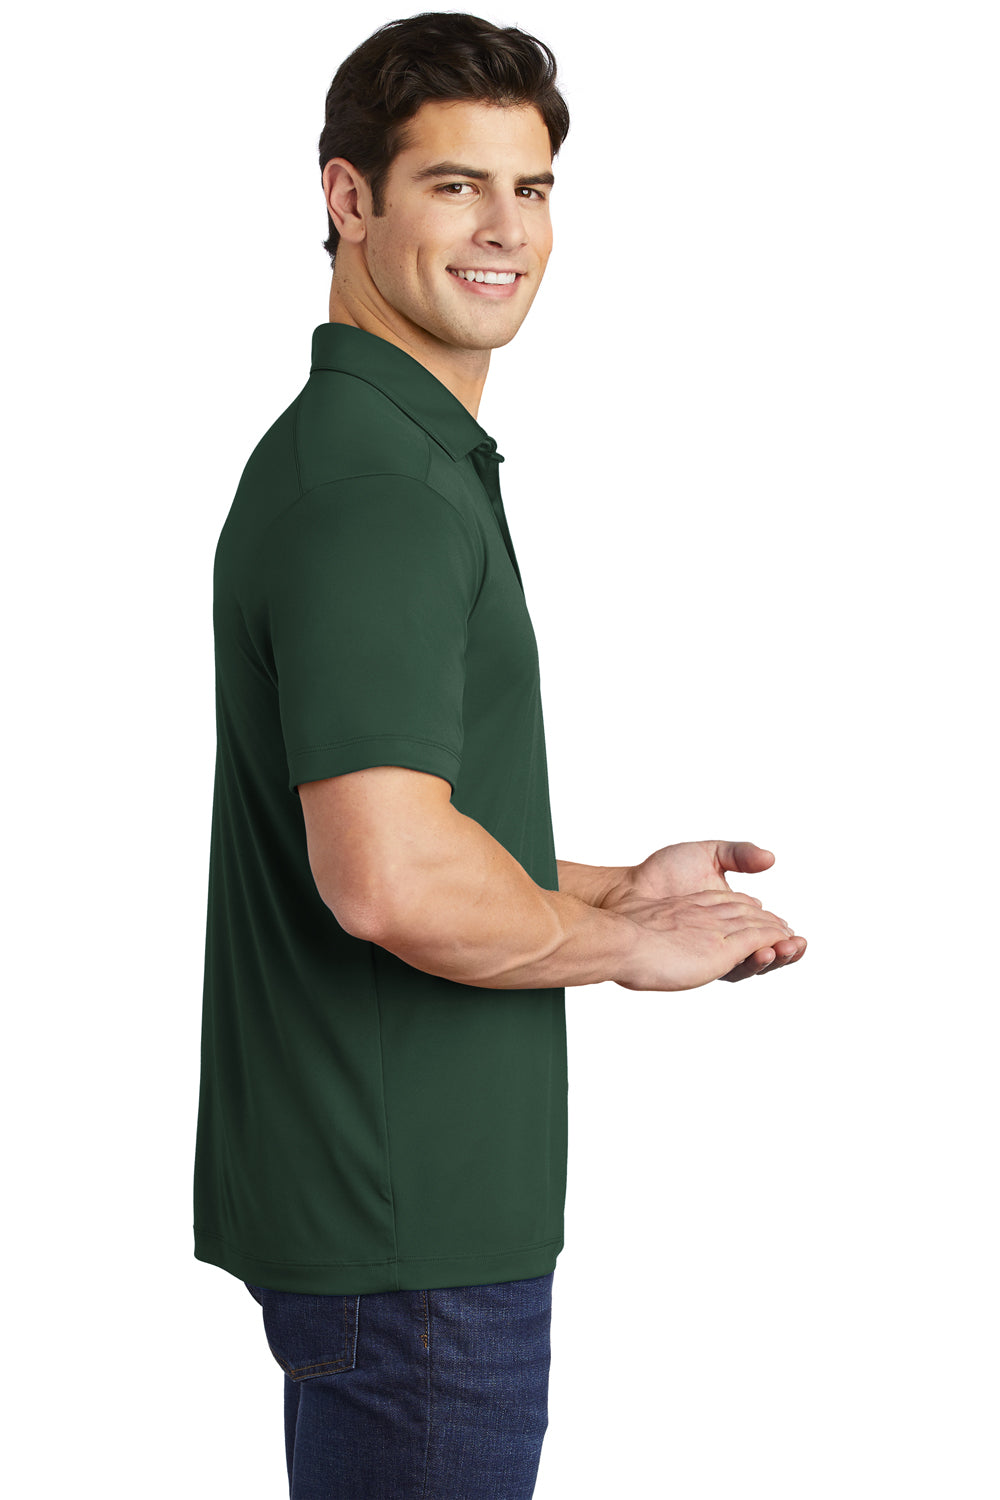 Sport-Tek Mens Short Sleeve Polo Shirt Forest Green Side